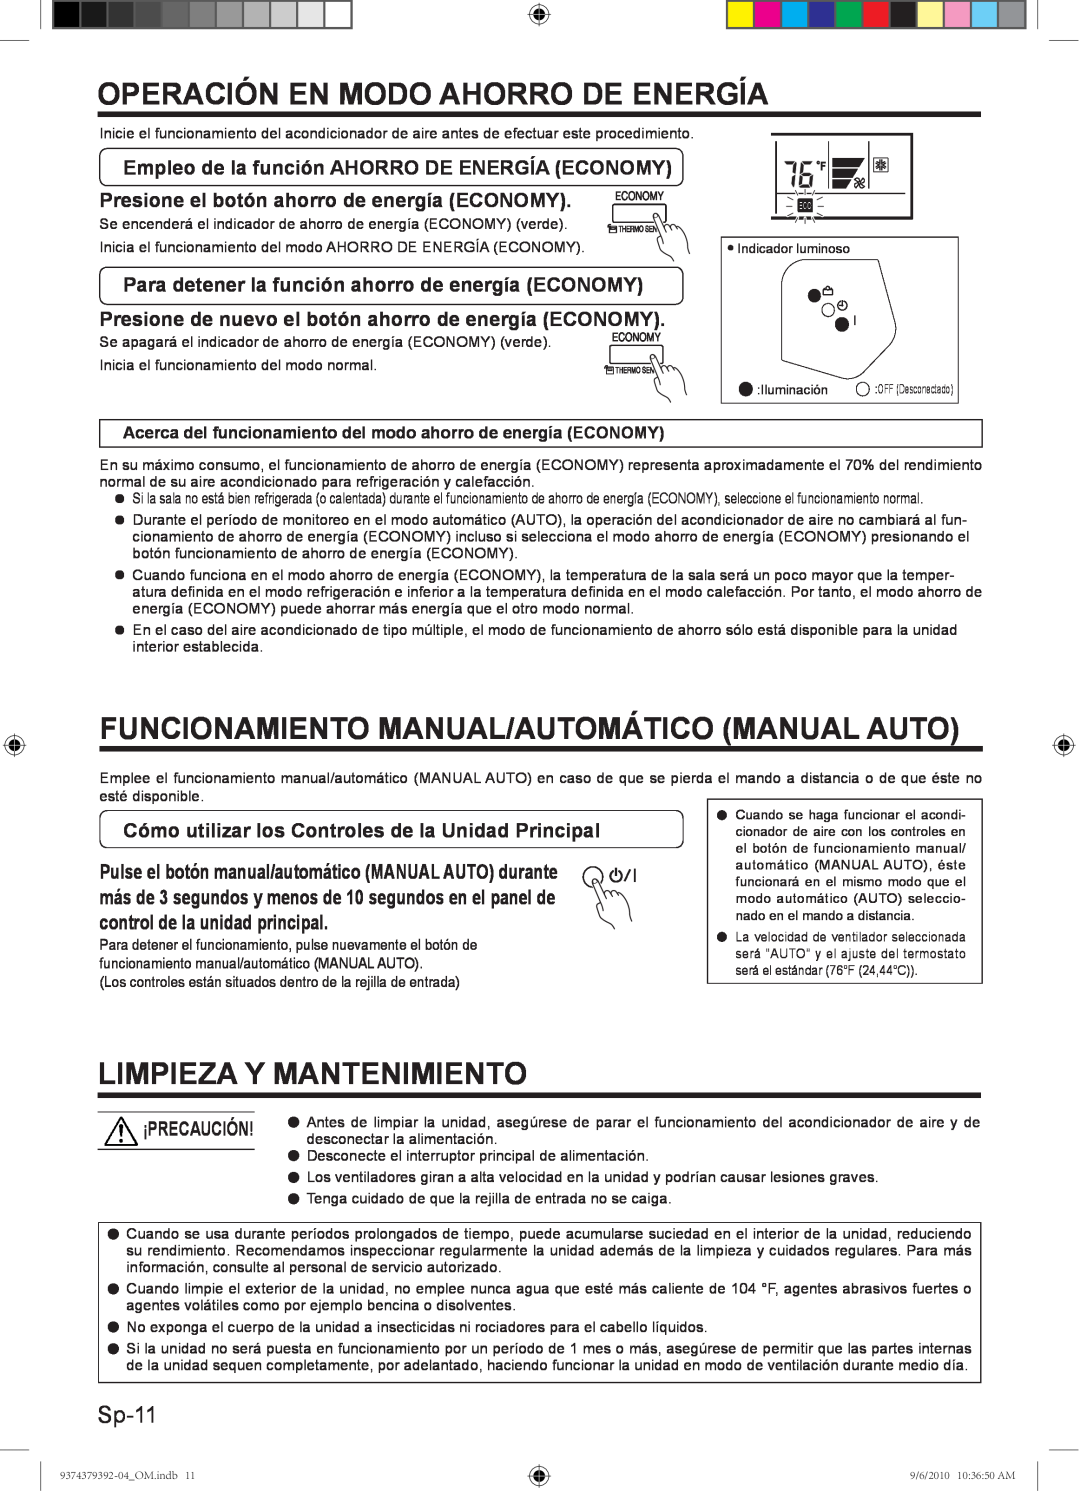 Fujitsu Halcyon Air Conditioner Operación En Modo Ahorro De Energía, Funcionamiento Manual/Automático Manual Auto, Sp-11 